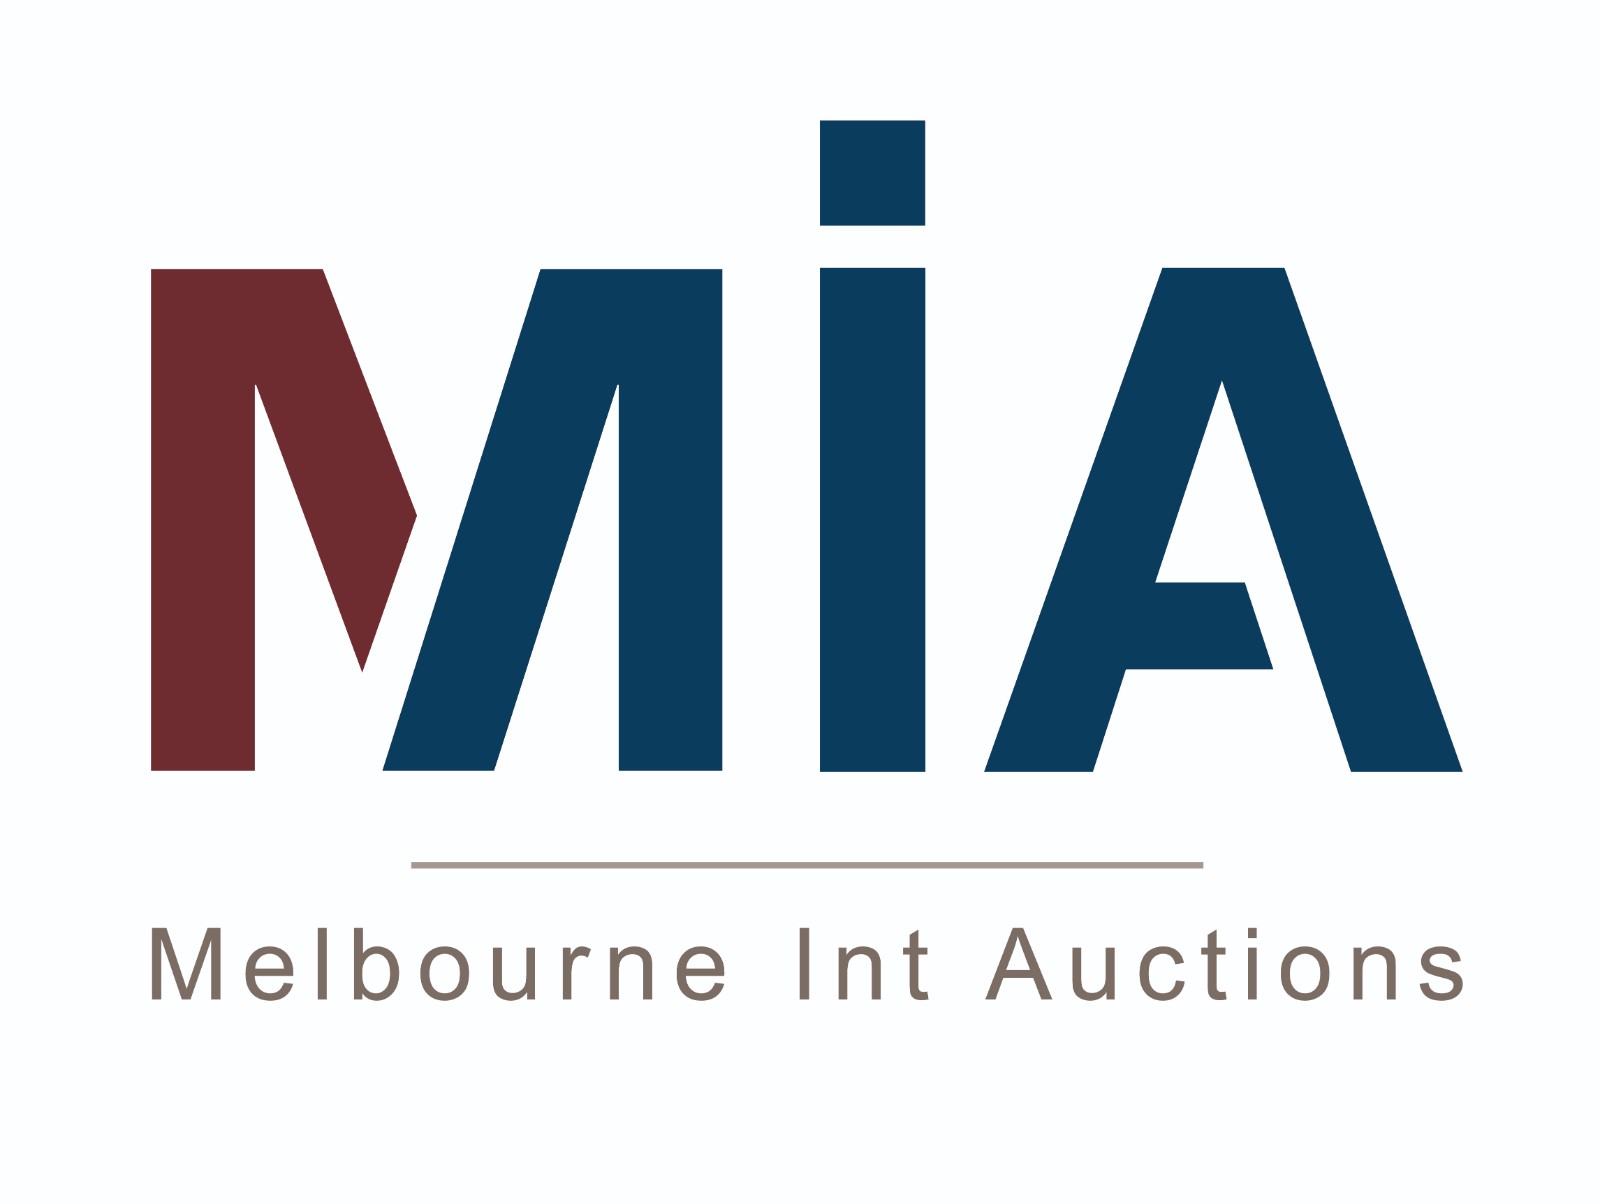 MELBOURNE INTERNATIONAL AUCTIONS PTY LTD